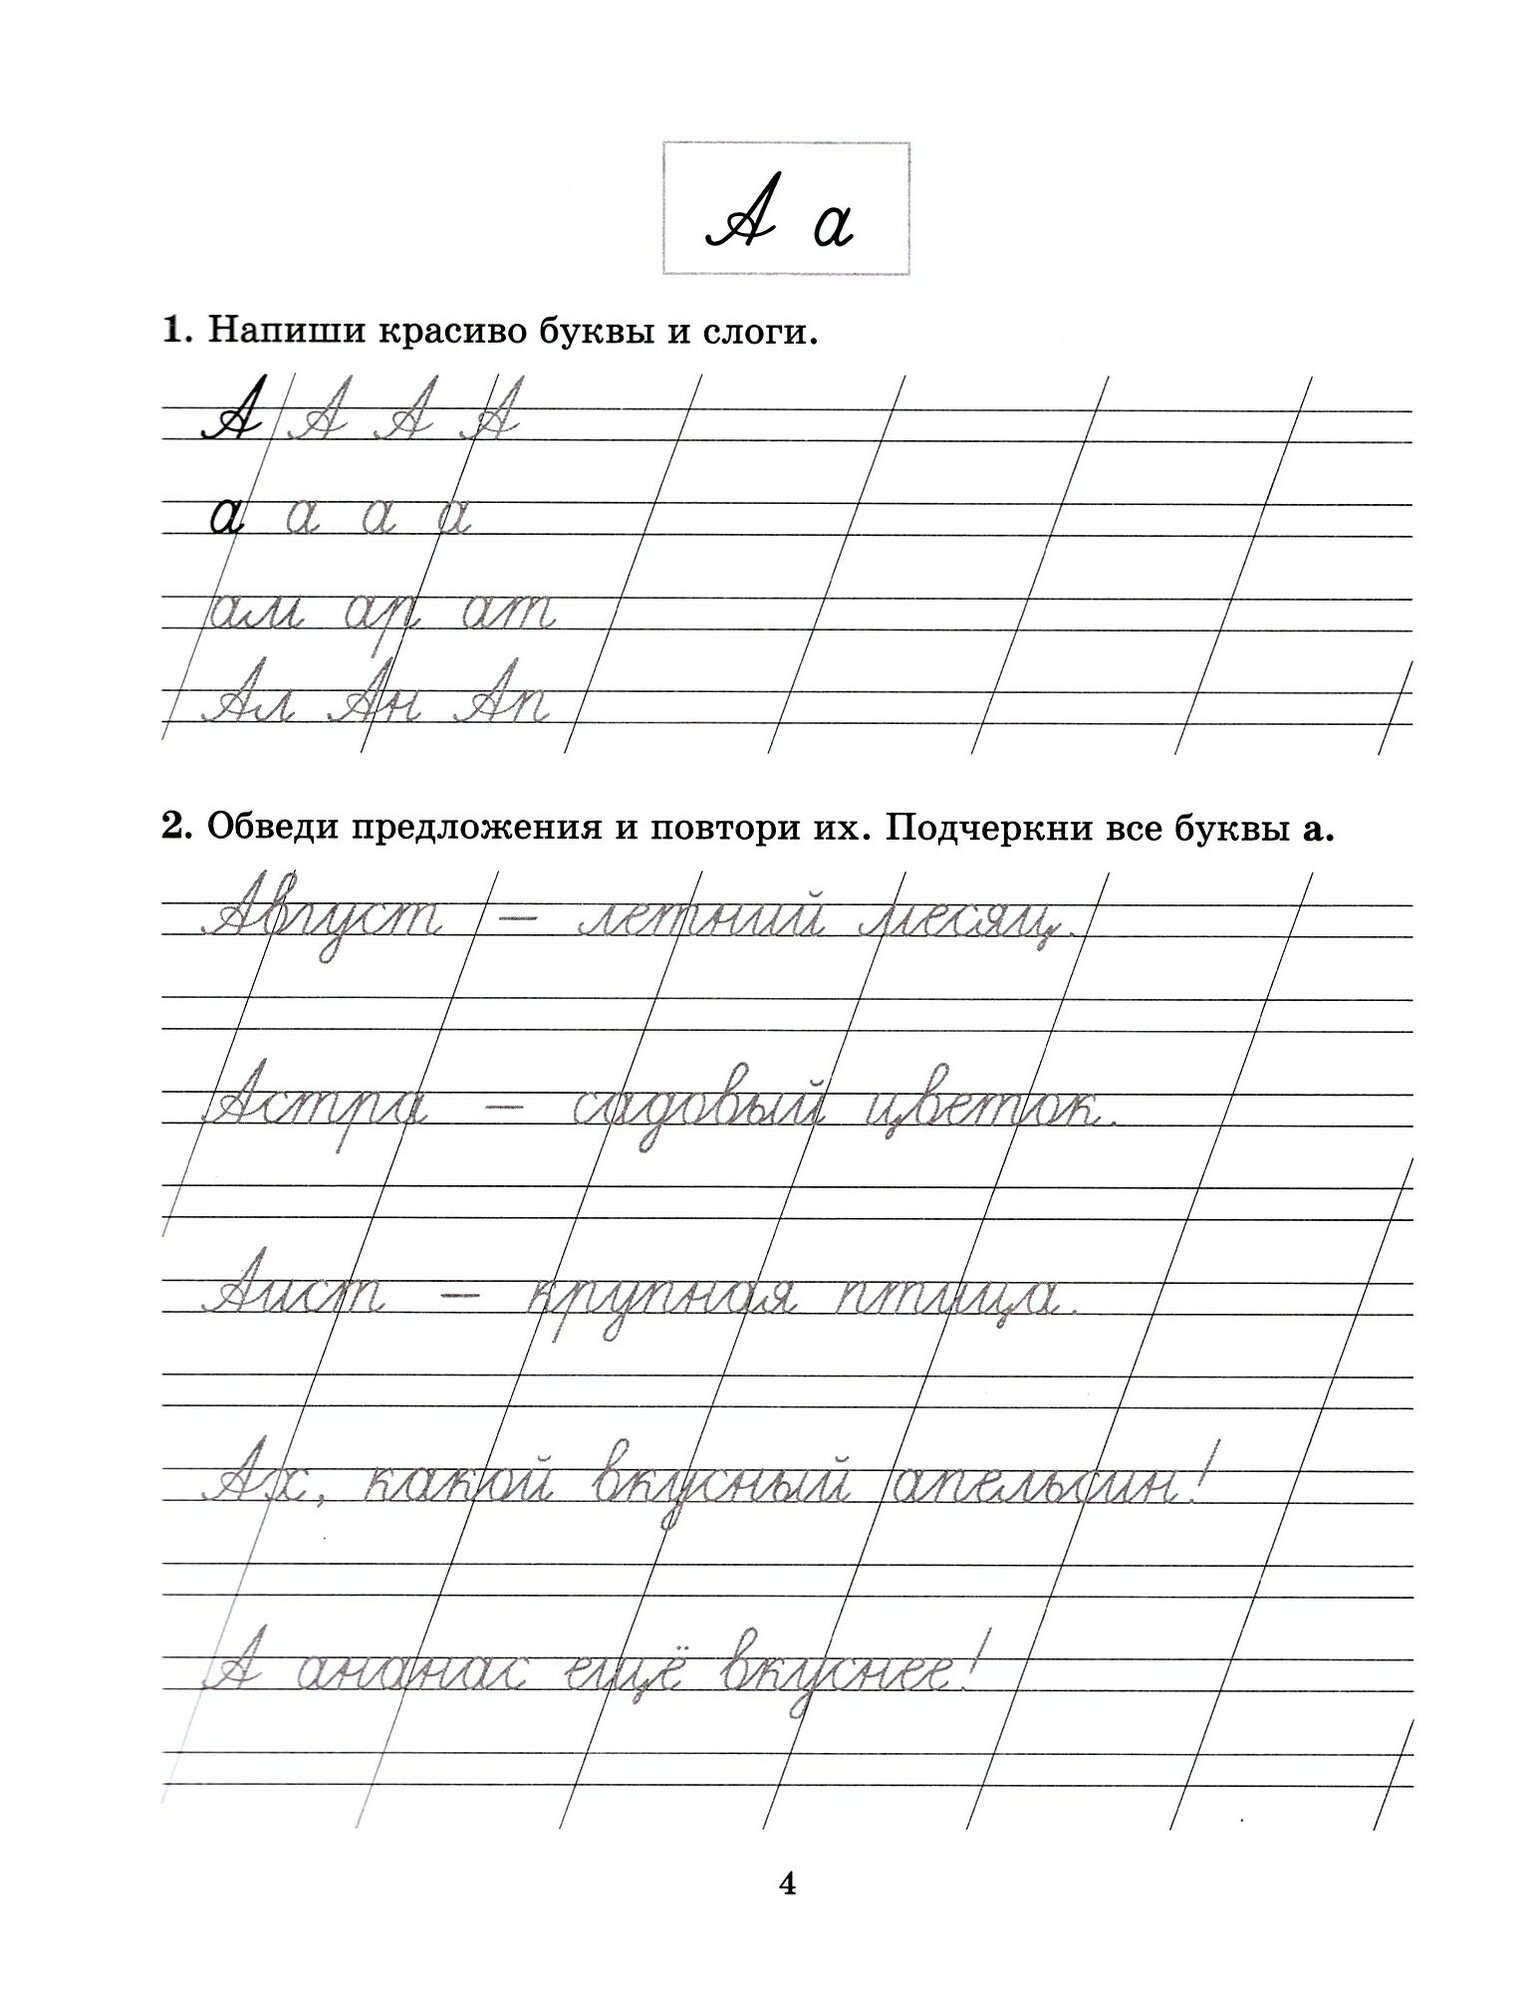 Задания и упражнения на отработку правил русского языка и для исправления почерка. 1-4 классы - фото №3